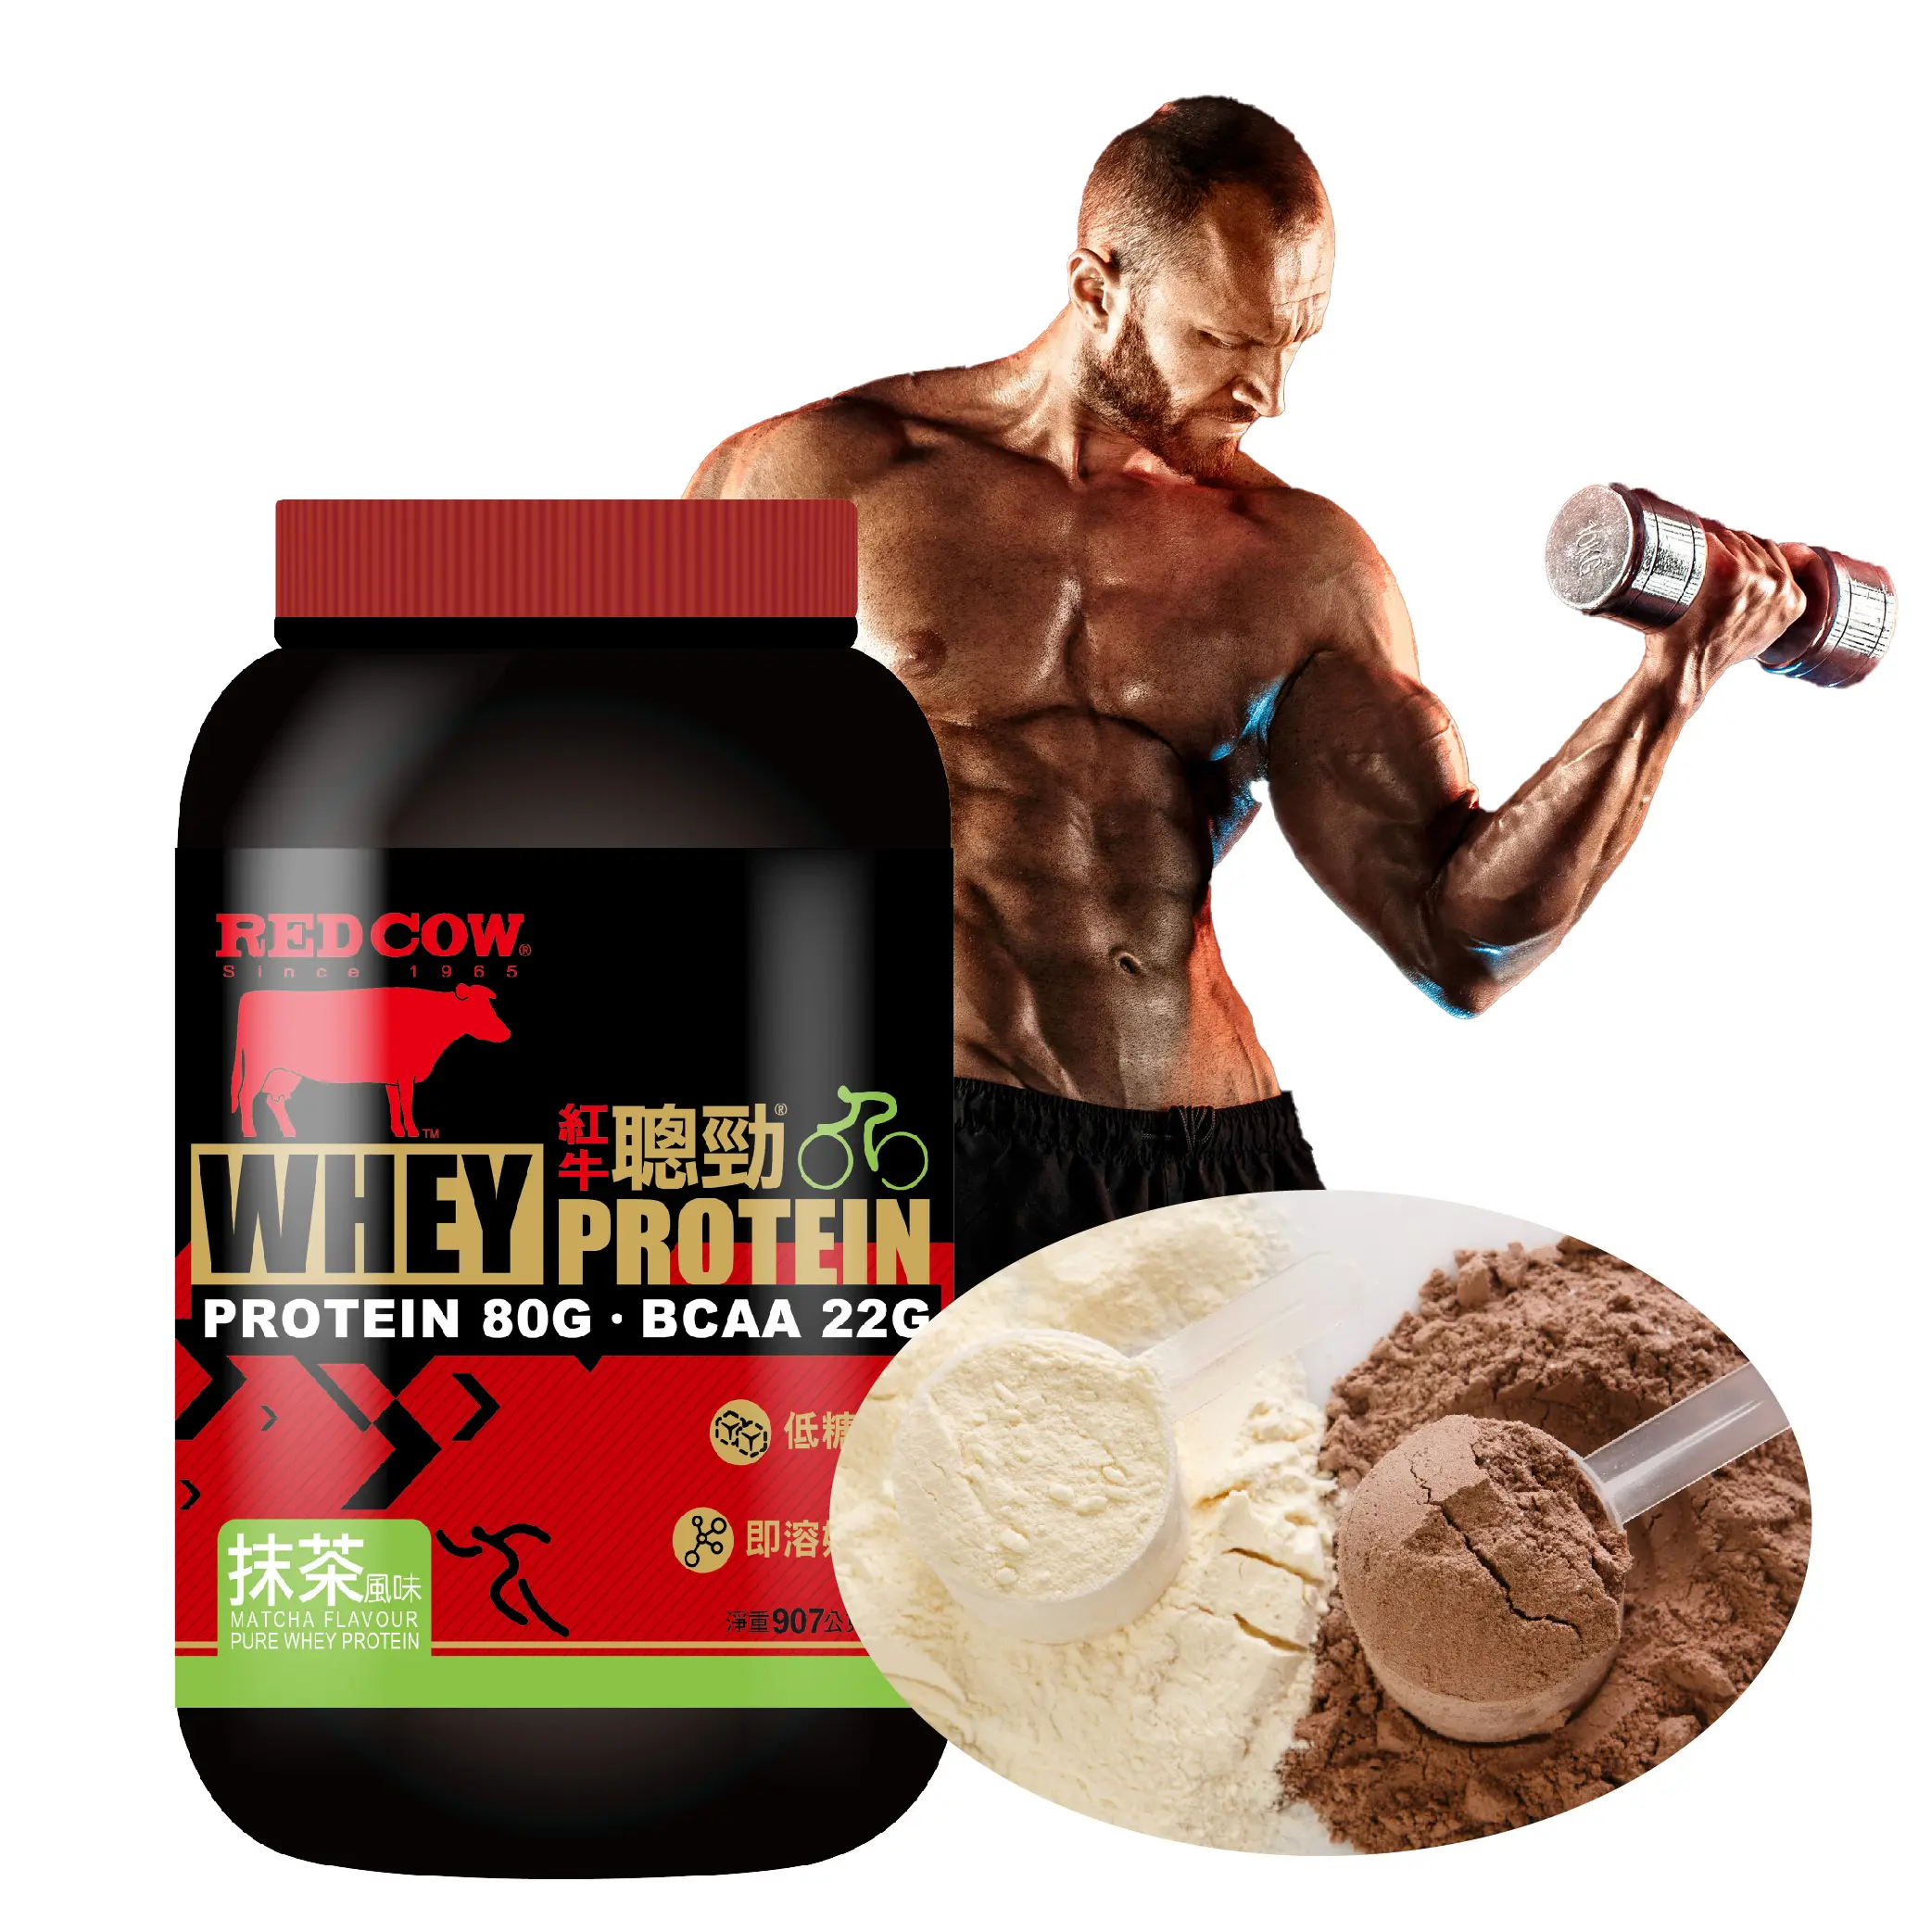 protine powder whey protein Matcha Flavour Bodybuilding Nutrition Supplement Protein Powder 2lb